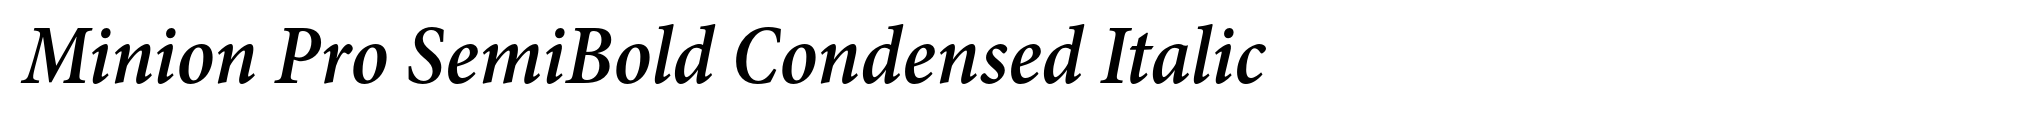 Minion Pro SemiBold Condensed Italic image